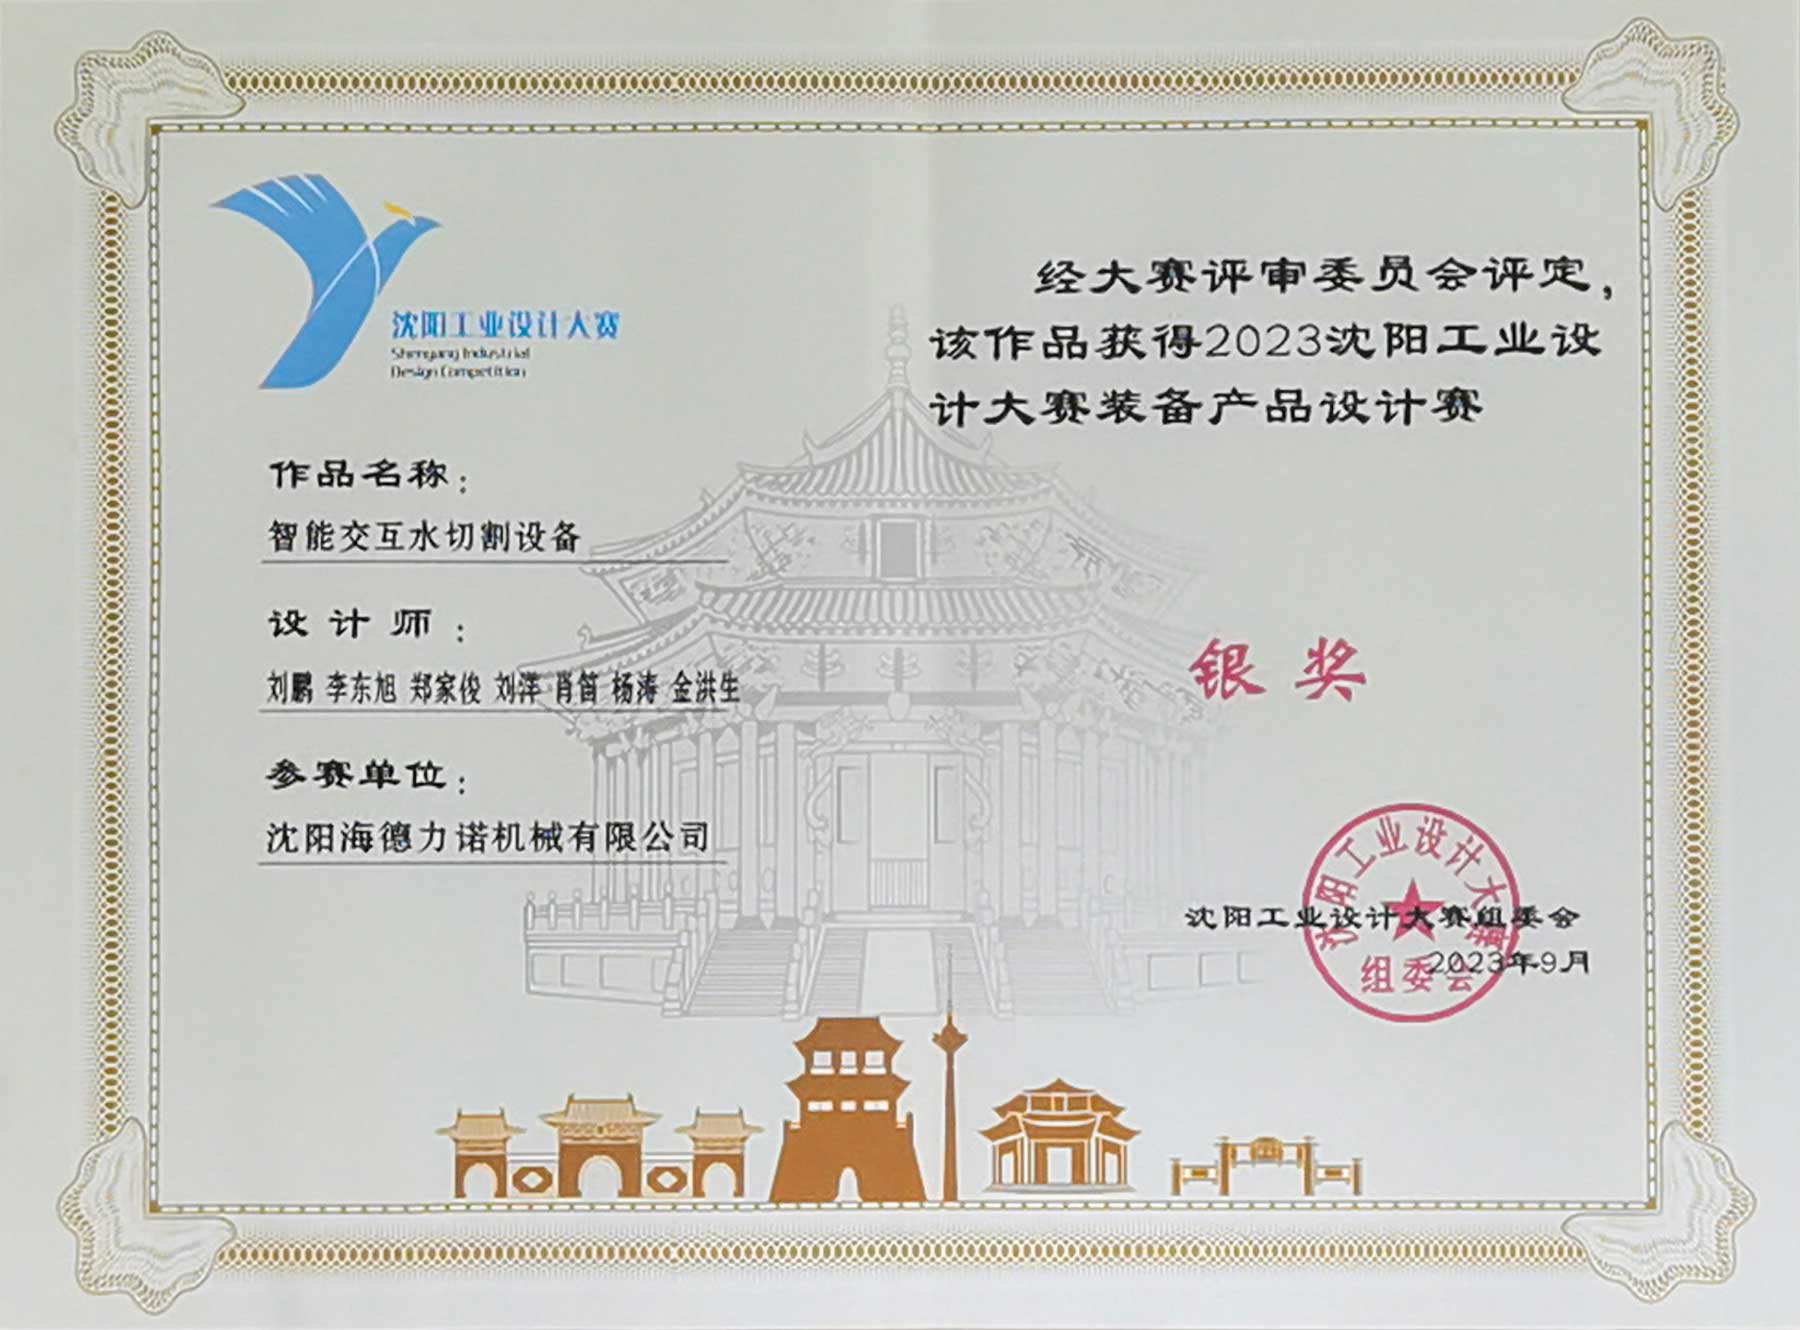 HEAD Waterjet: Shenyang Endüstriyel Tasarım Yarışmasında Ekipman Ürünleri Kategorisinde Gümüş Kazanmak